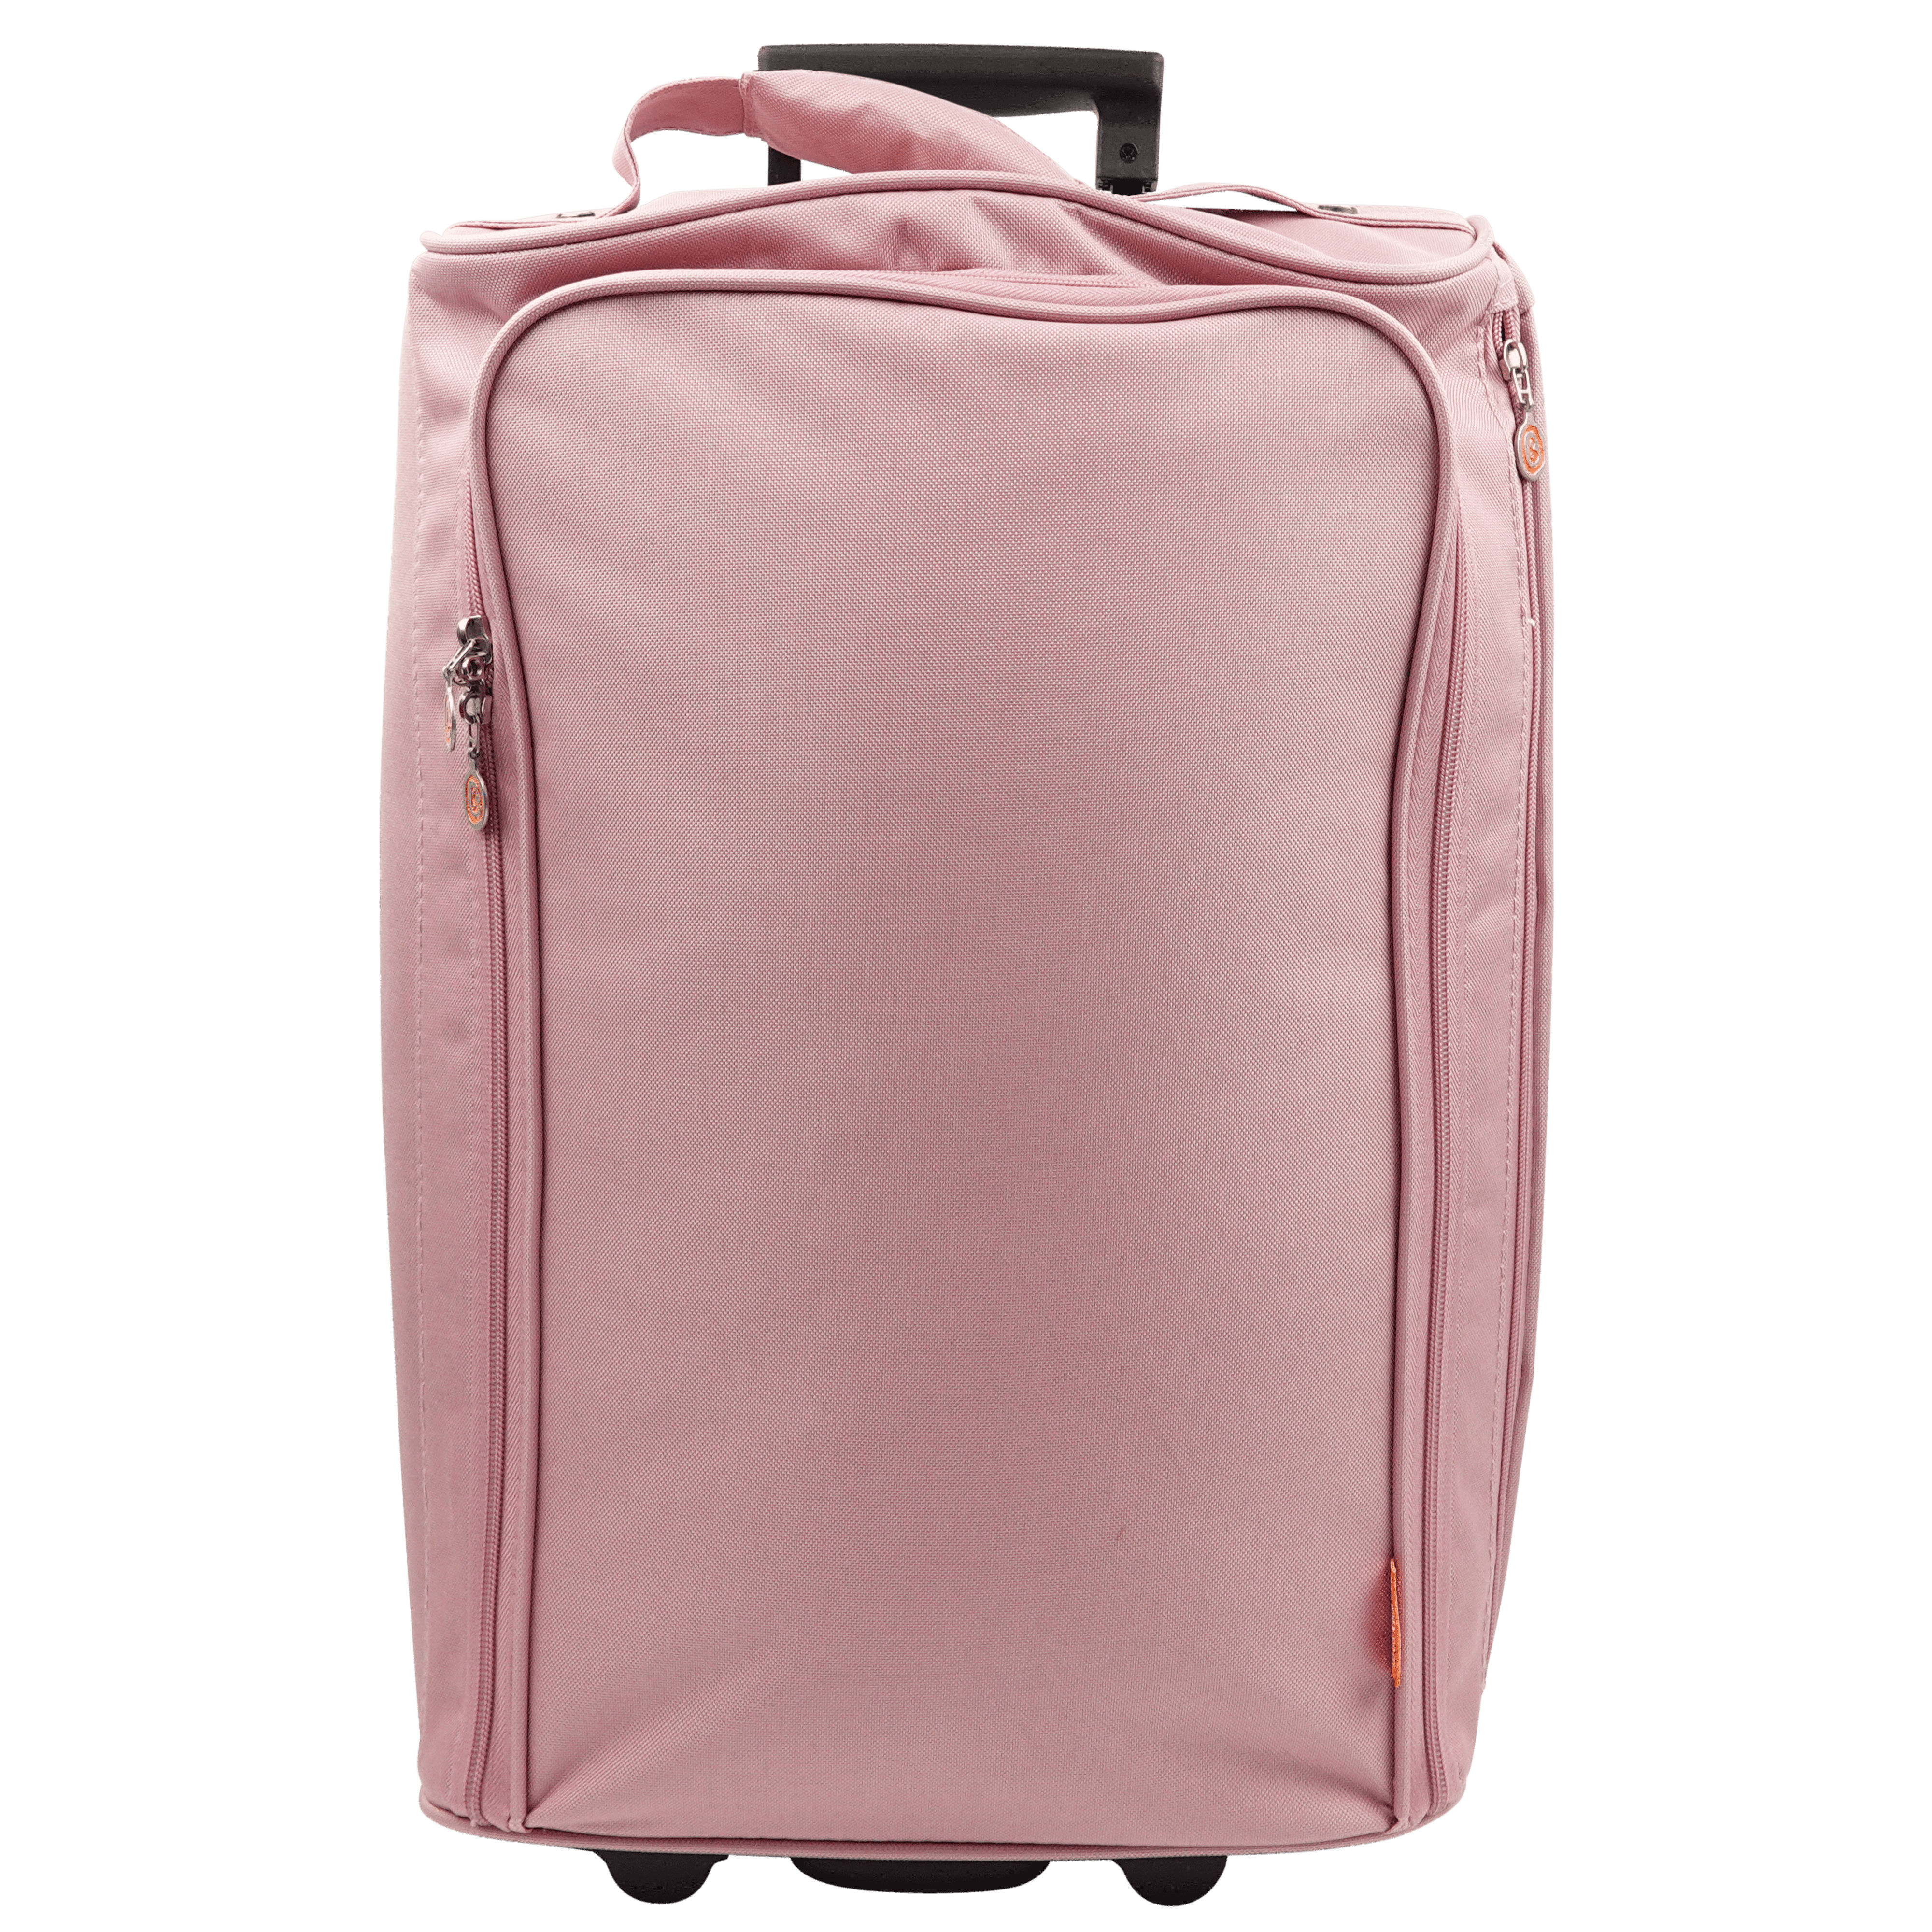 reis-trolley-oud-roze